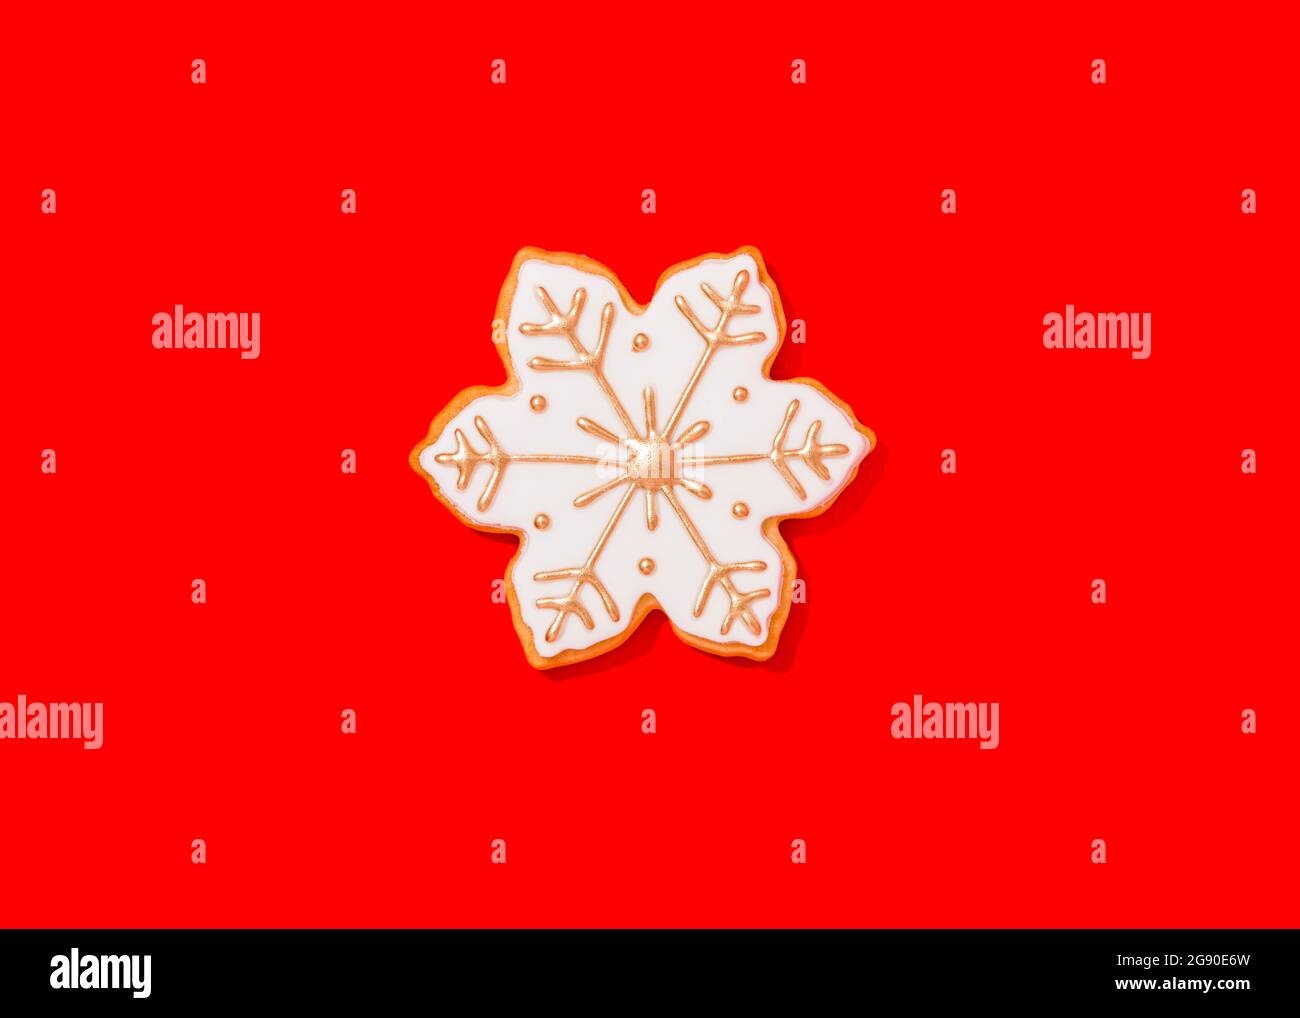 Biscuit de Noël en forme de flocons de neige sur fond rouge vif Banque D'Images